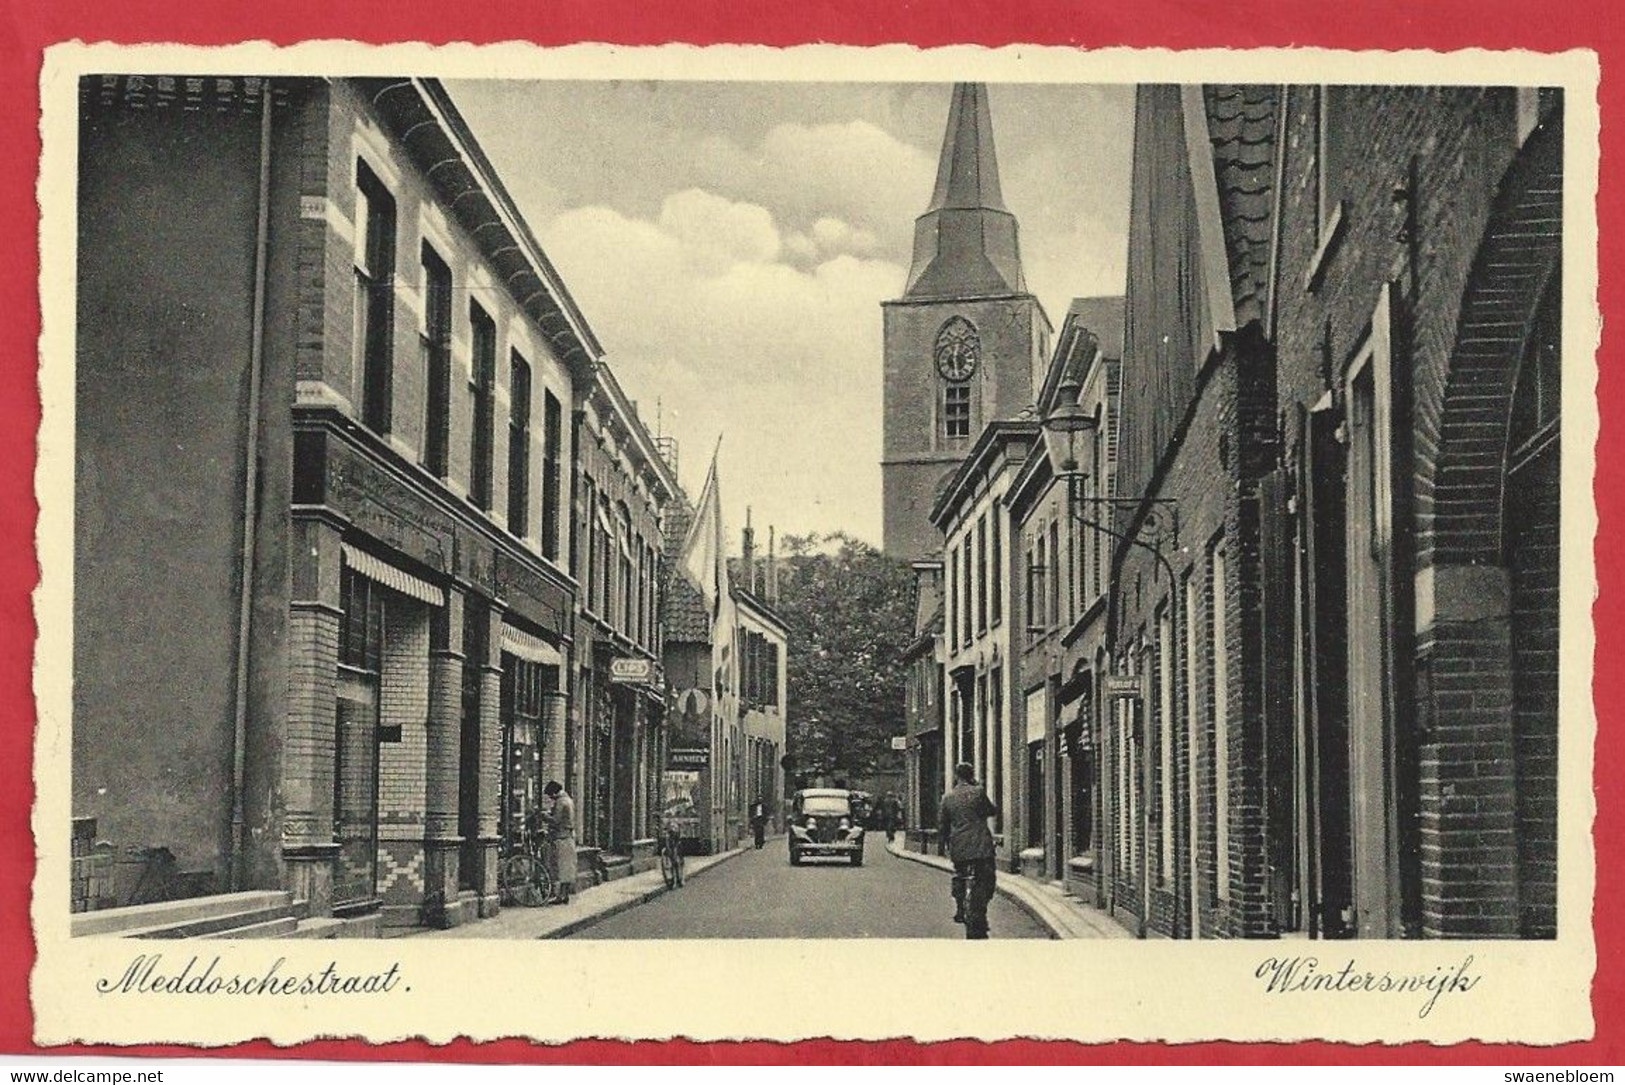 NL.- Winterswijk, Meddoschestraat, Uitgave Boekhandel G.J. Albrecht. - Winterswijk